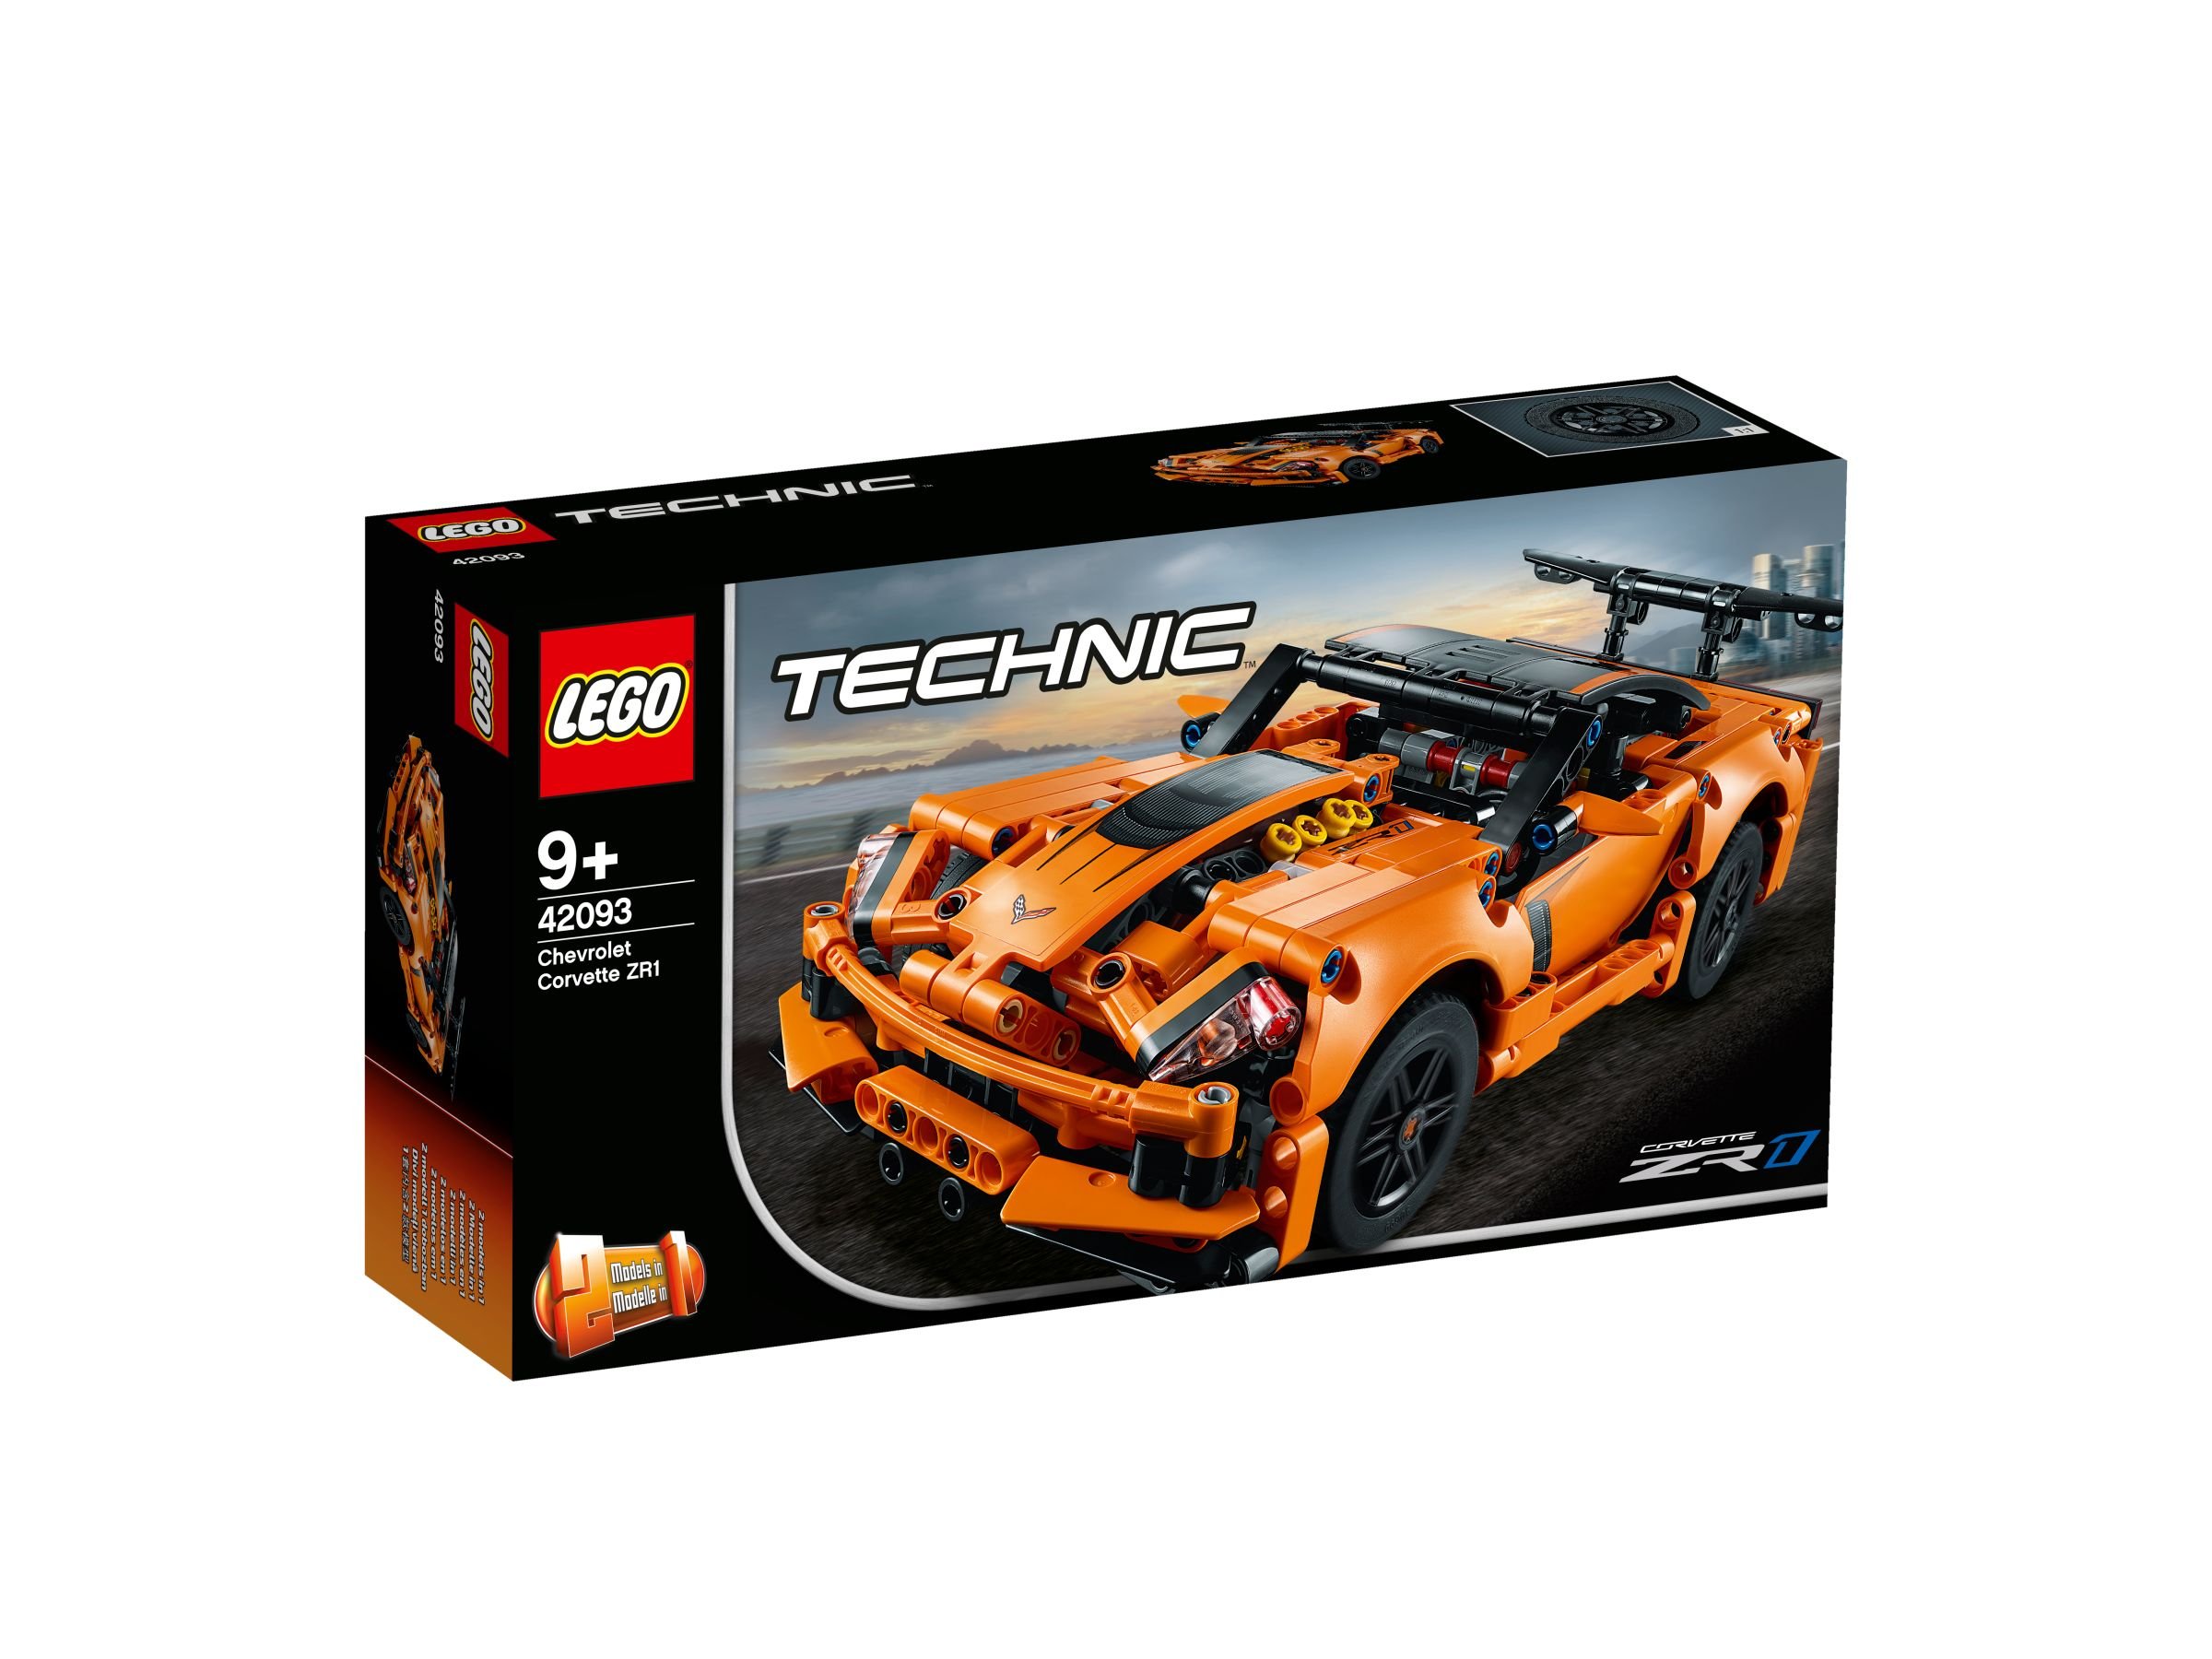 LEGO Technic 42093 Chevrolet Corvette ZR1 LEGO_42093_alt1.jpg